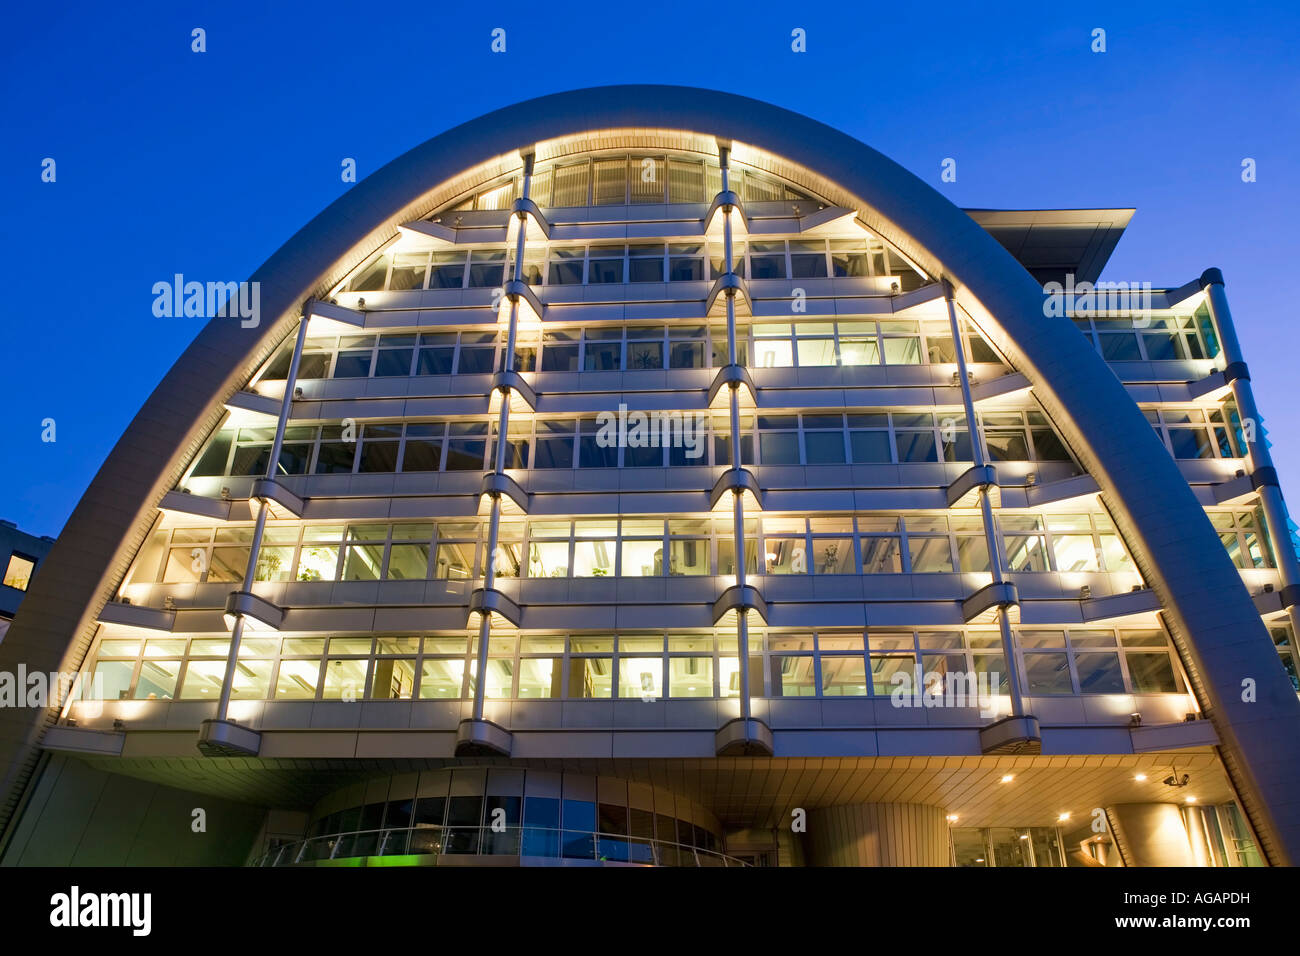 Bourse de Berlin de l'architecture moderne au crépuscule Banque D'Images